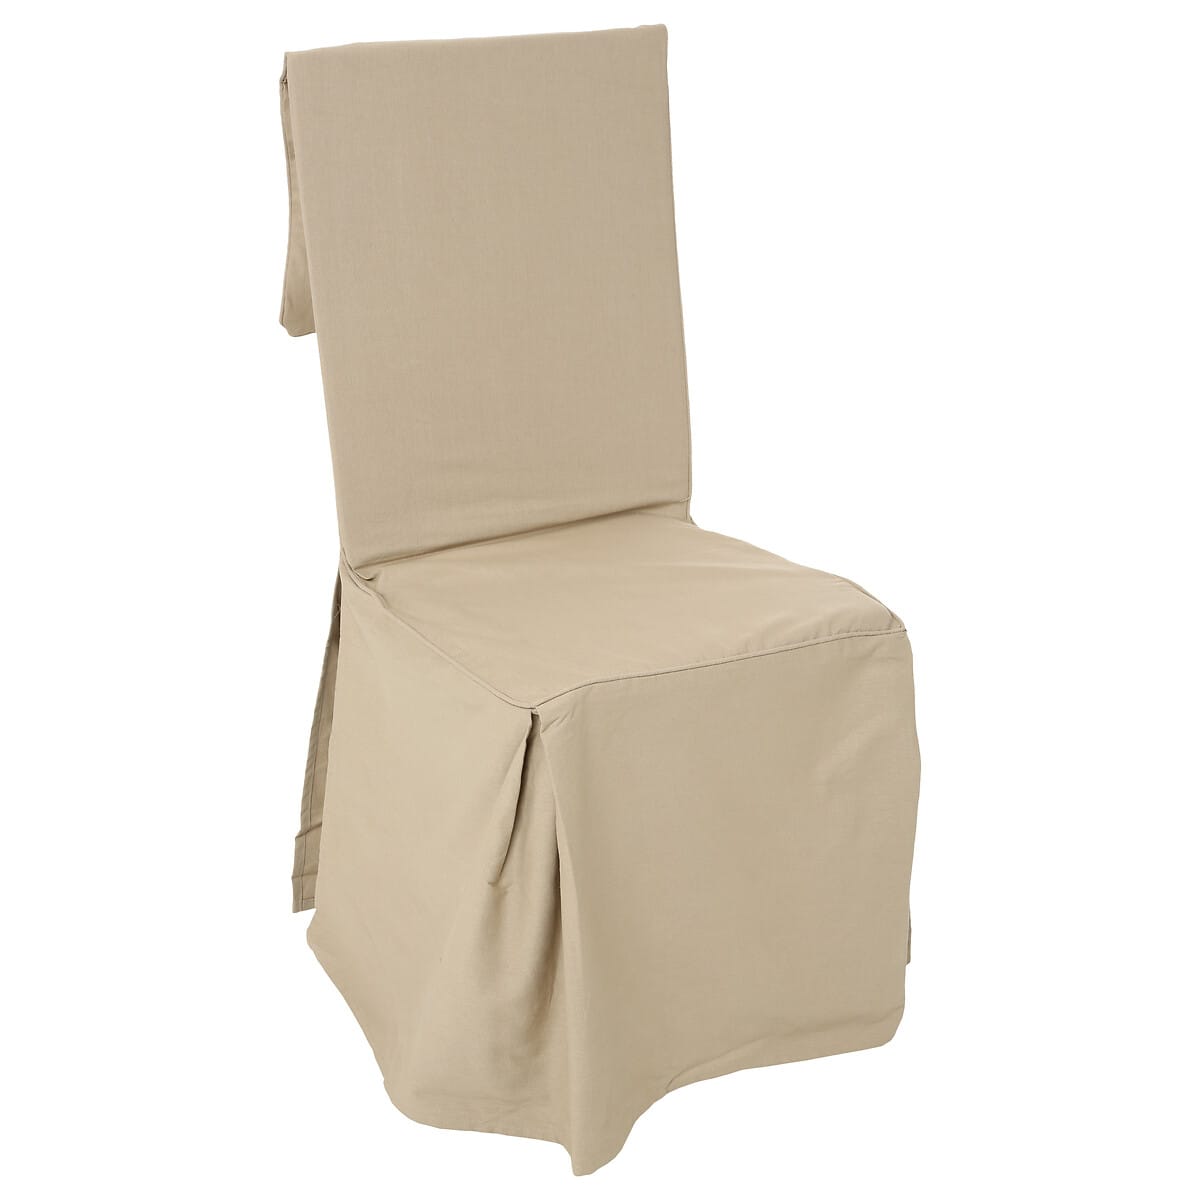 Housses de coussin Protection de chaise - Protège-chaise, Housse